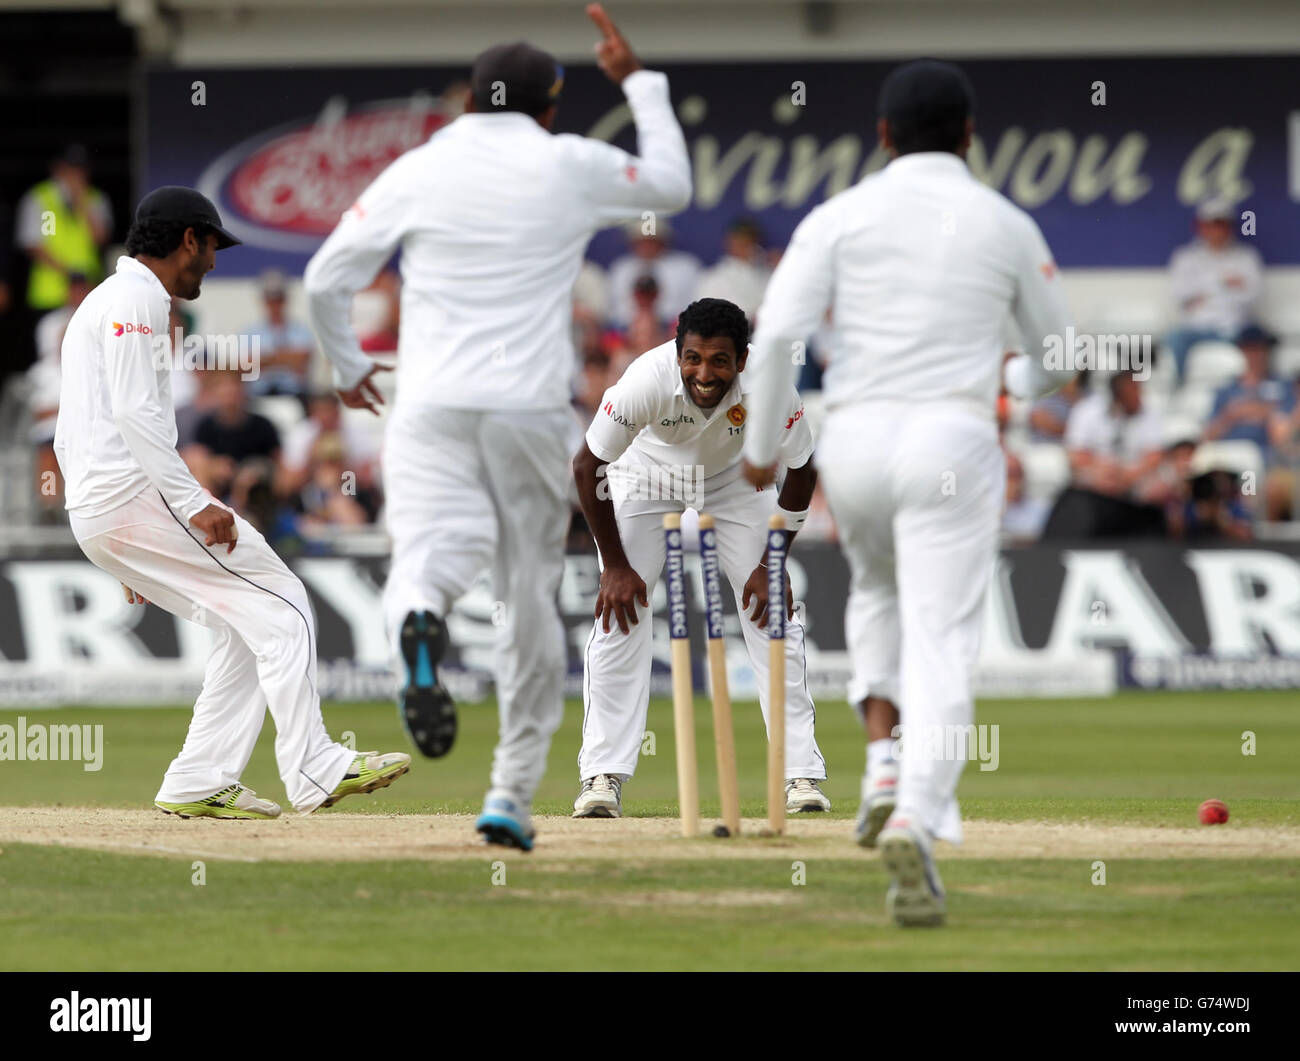 Cricket - Investec Test Series - seconda prova - Day Four - Inghilterra / Sri Lanka - Headingley. Hammika Prasad dello Sri Lanka celebra la presa del cazzo di Alastiar Cook dell'Inghilterra Foto Stock